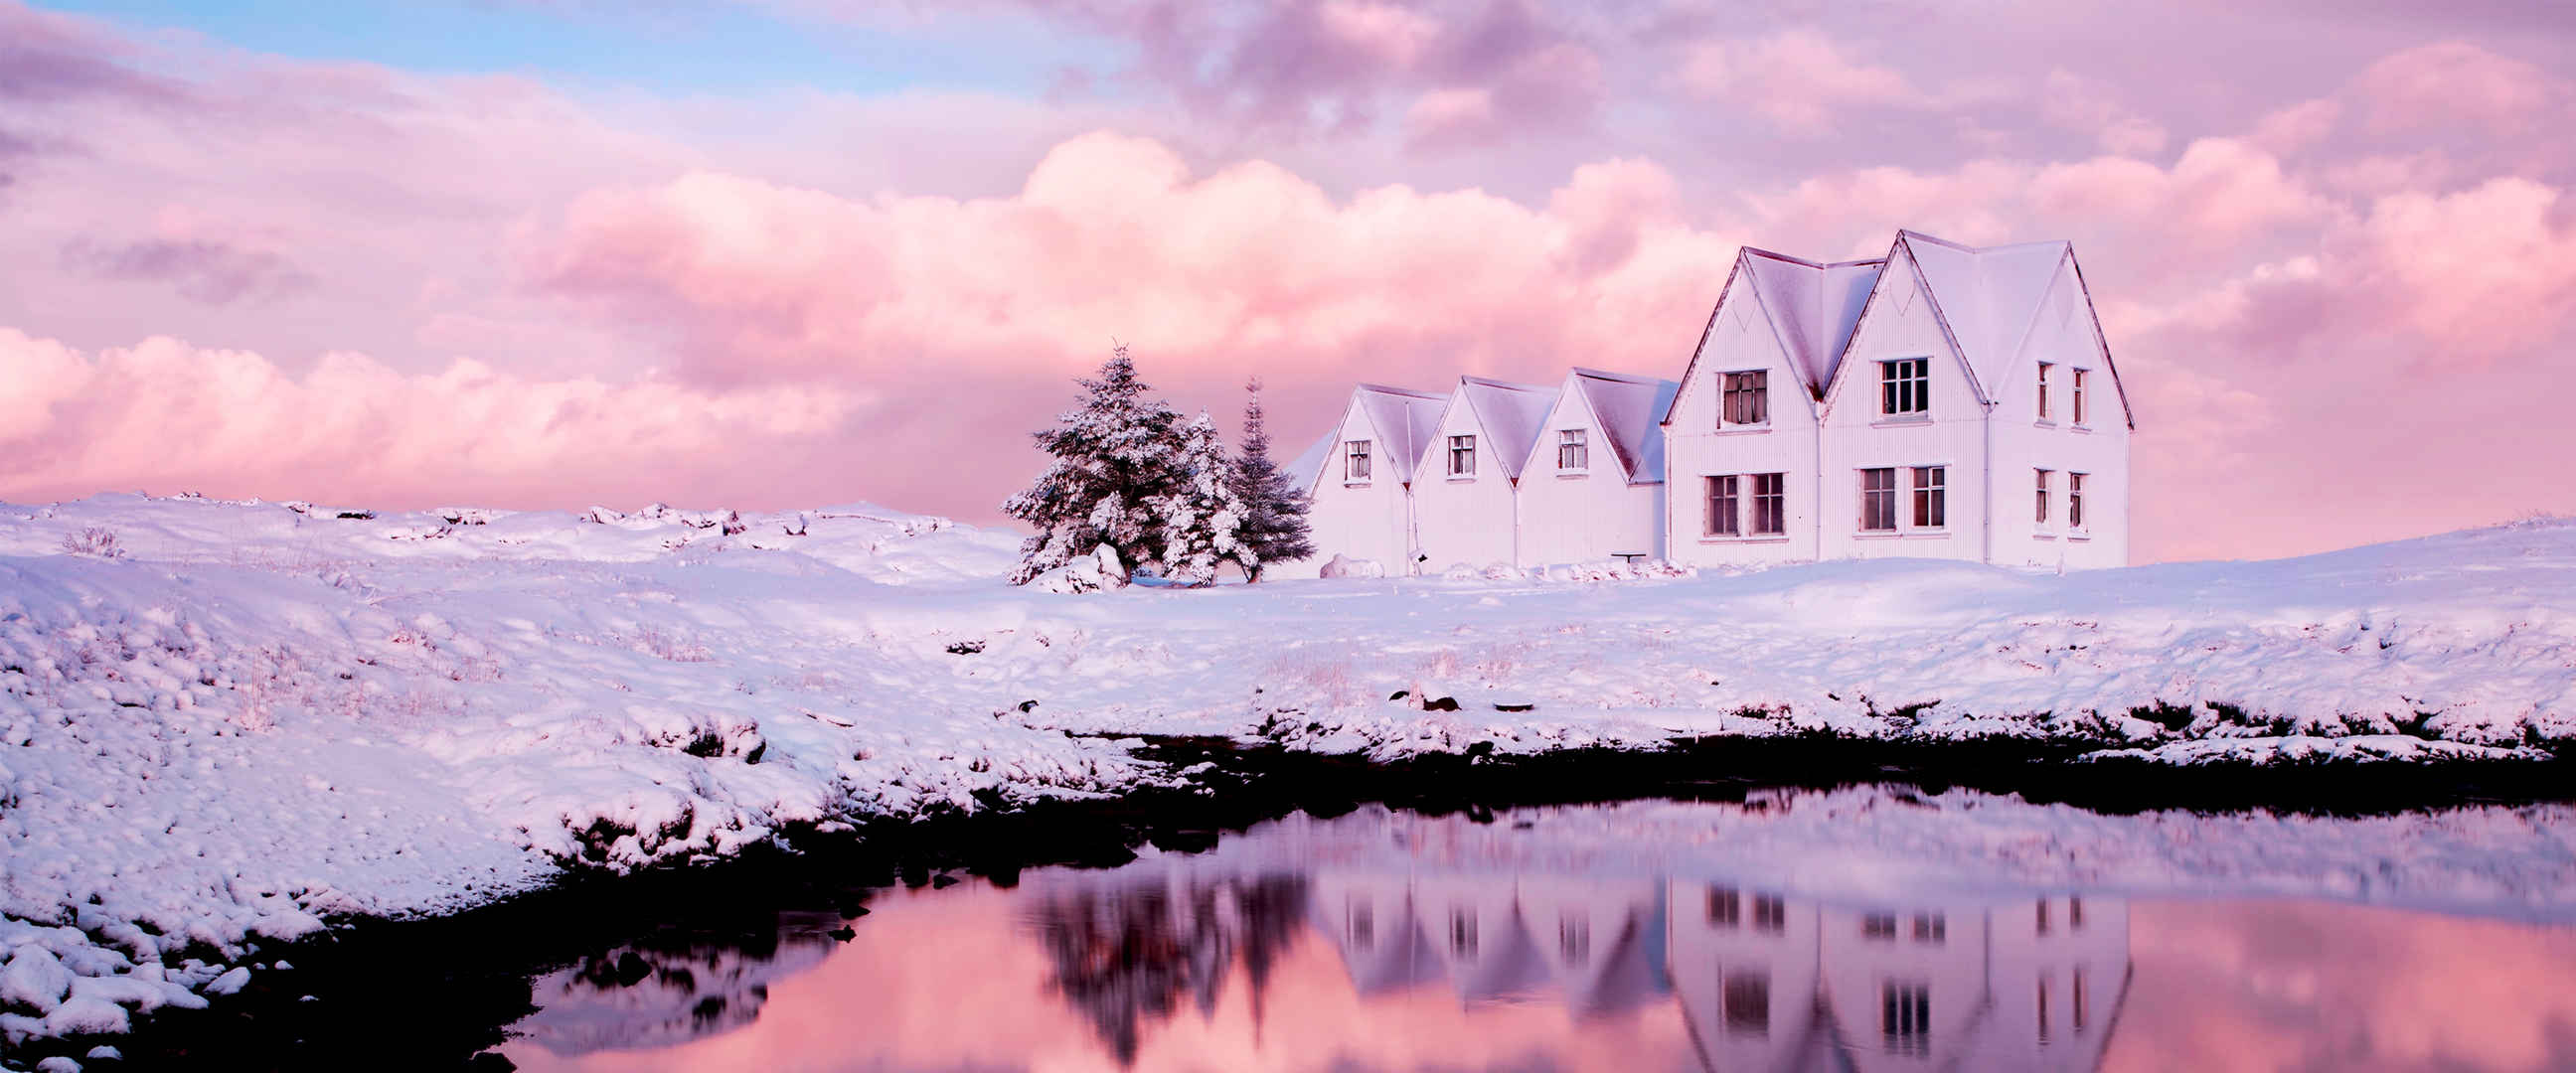 紫色天空雪景房子壁纸